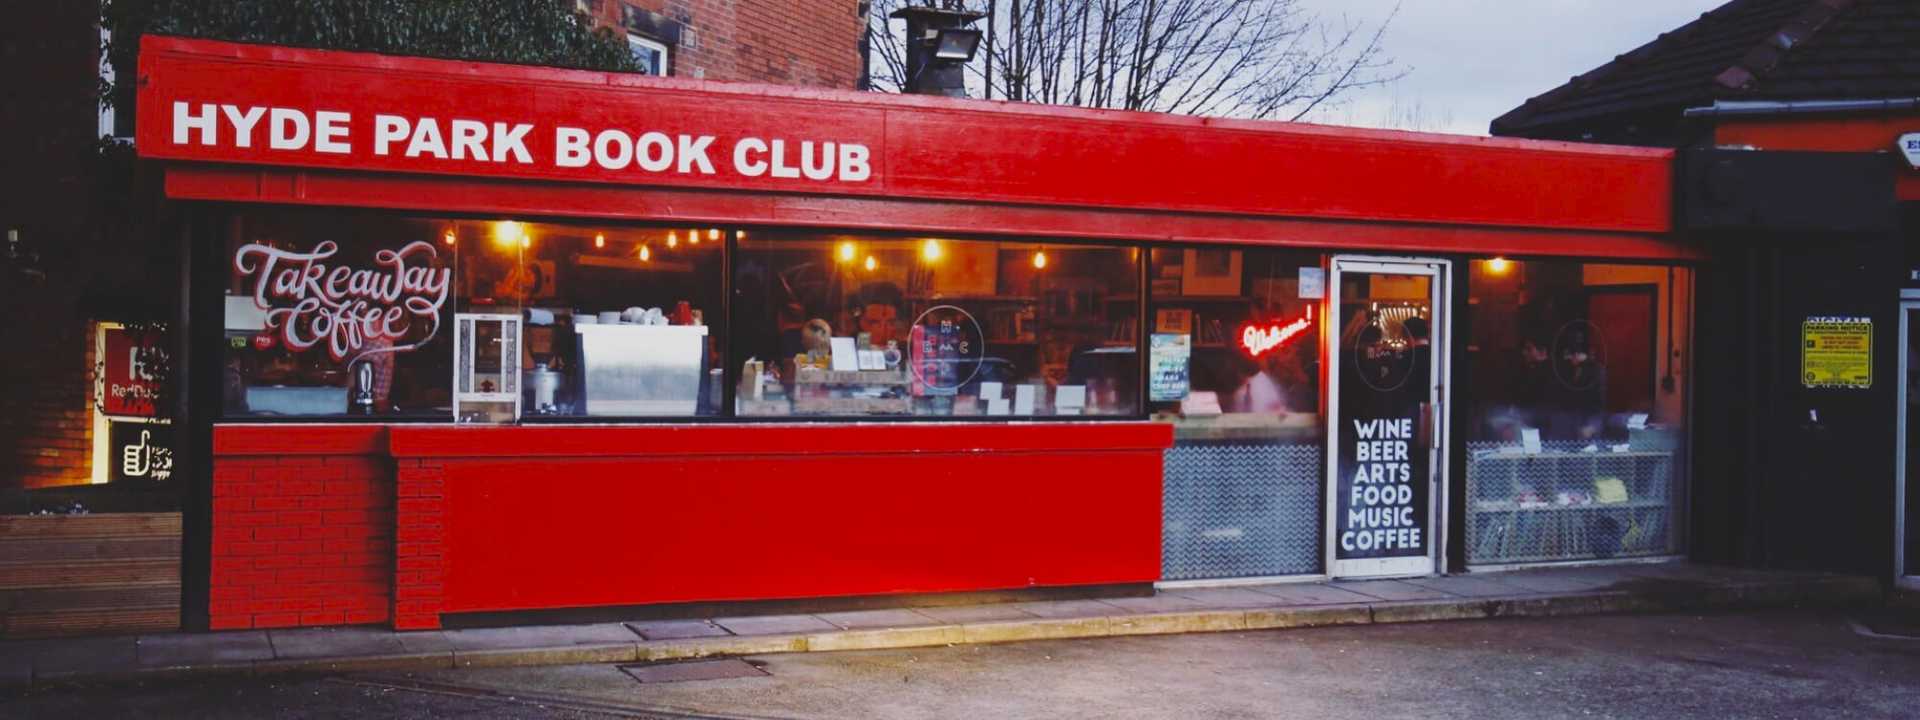 Hyde Park Book Club